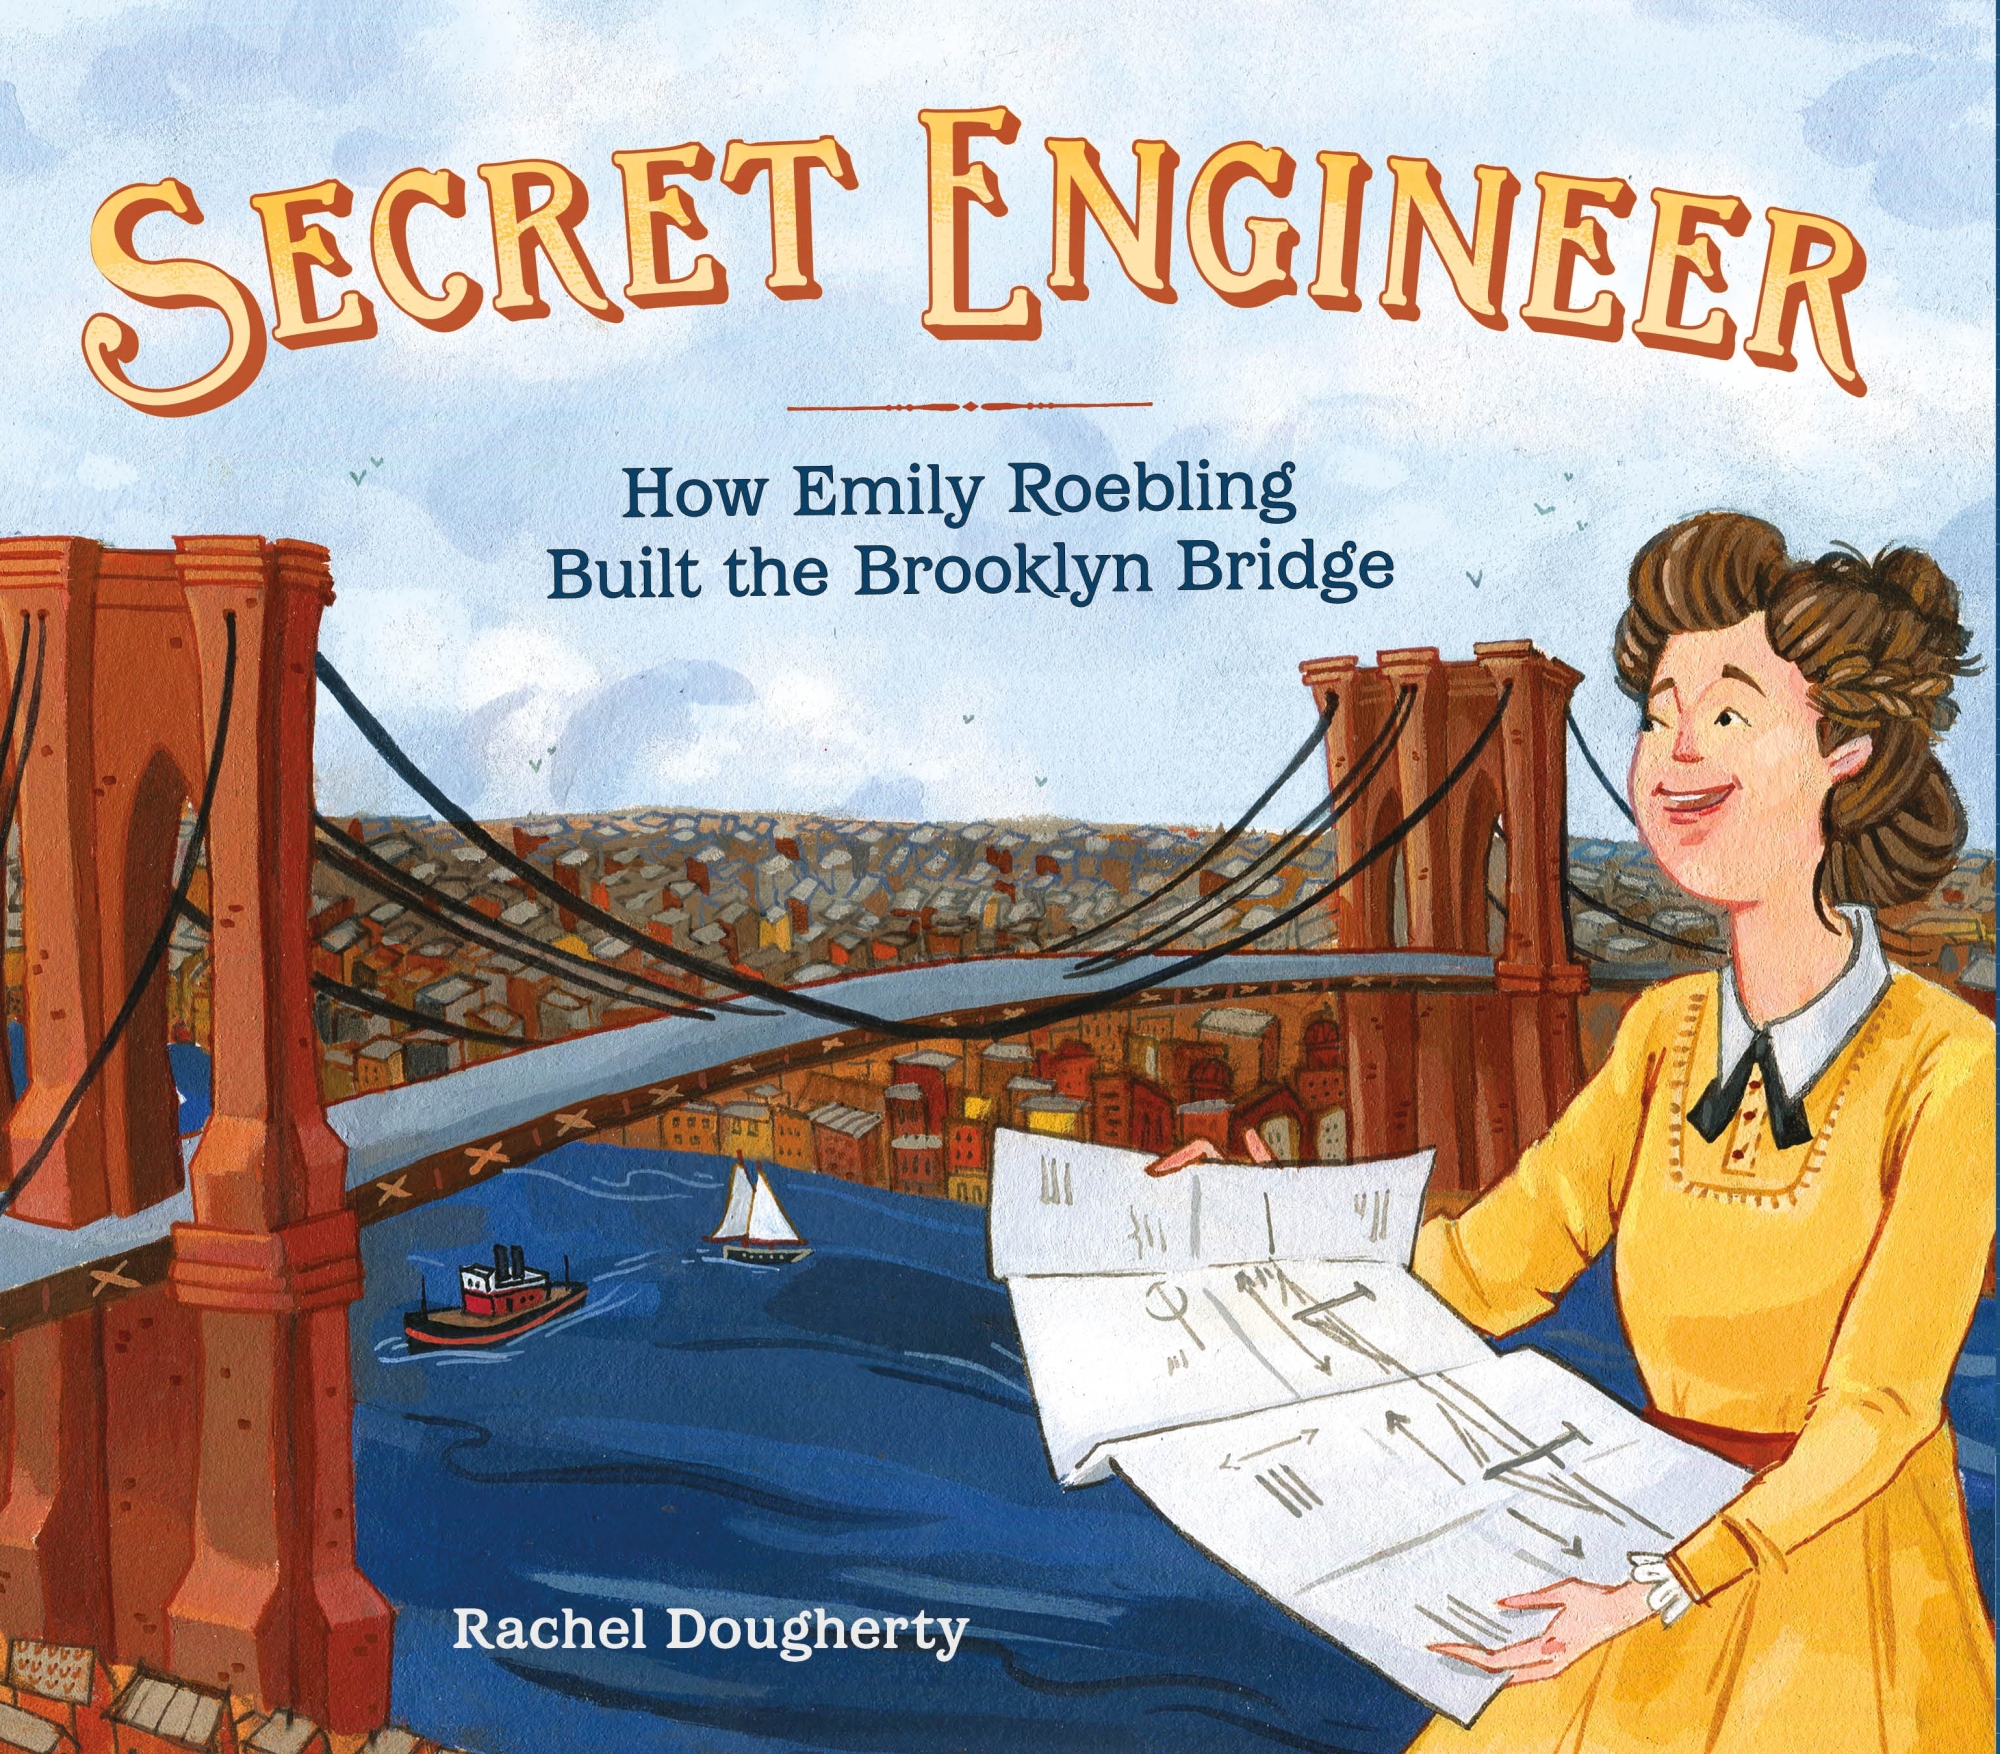 Couverture du livre Secret Engineer.